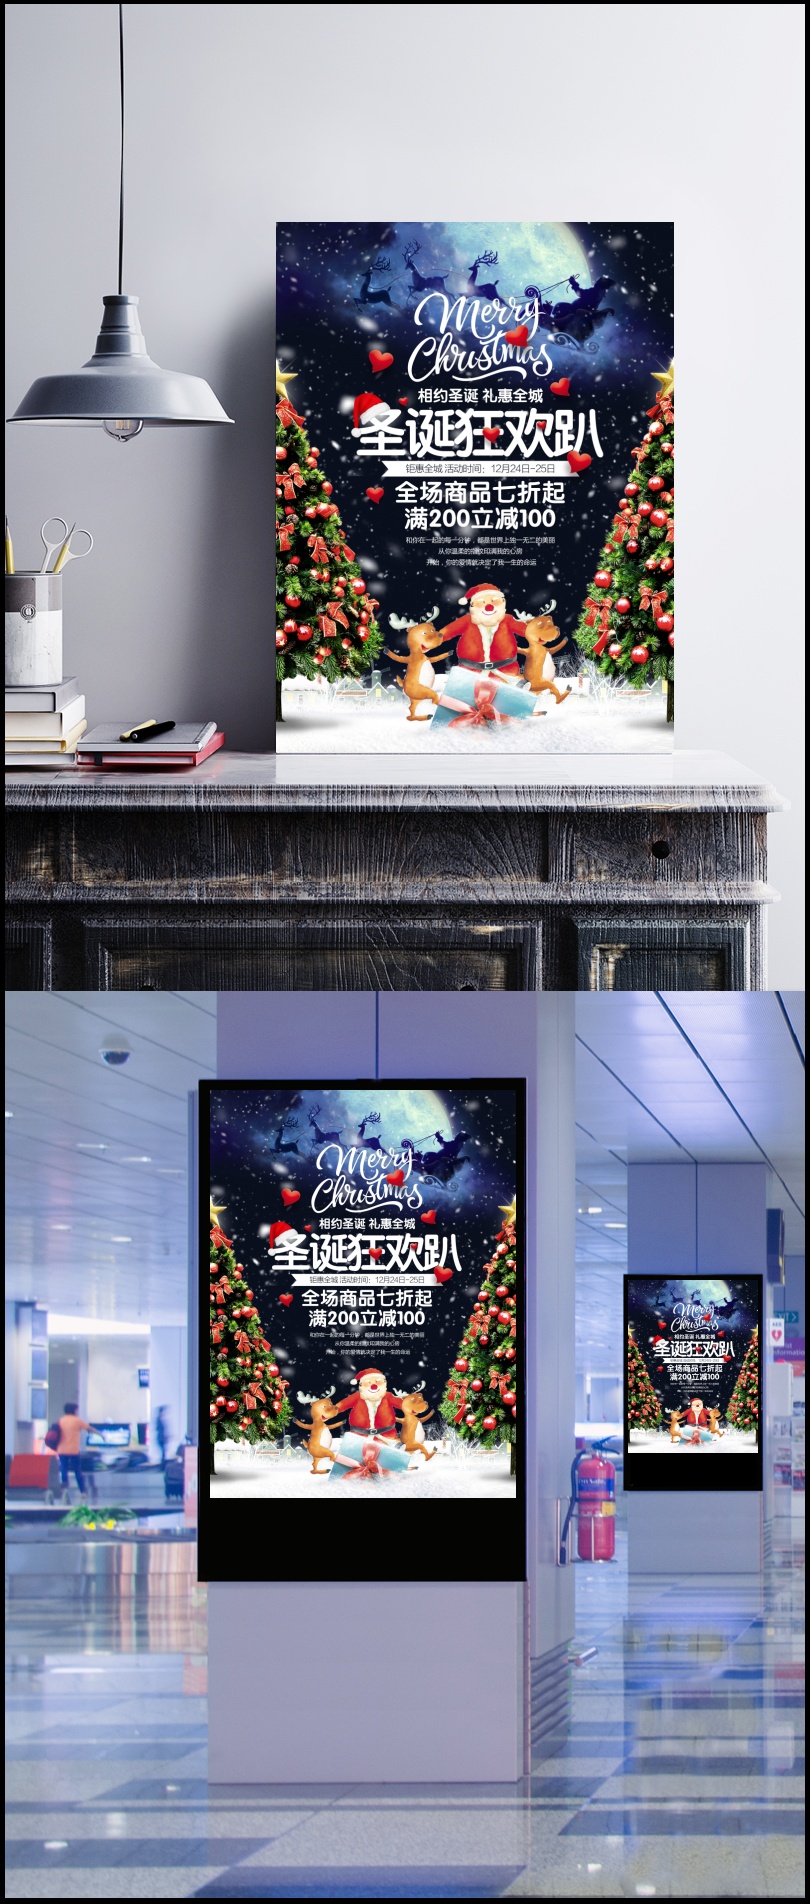 圣诞狂欢趴活动海报设计源文件psd图片